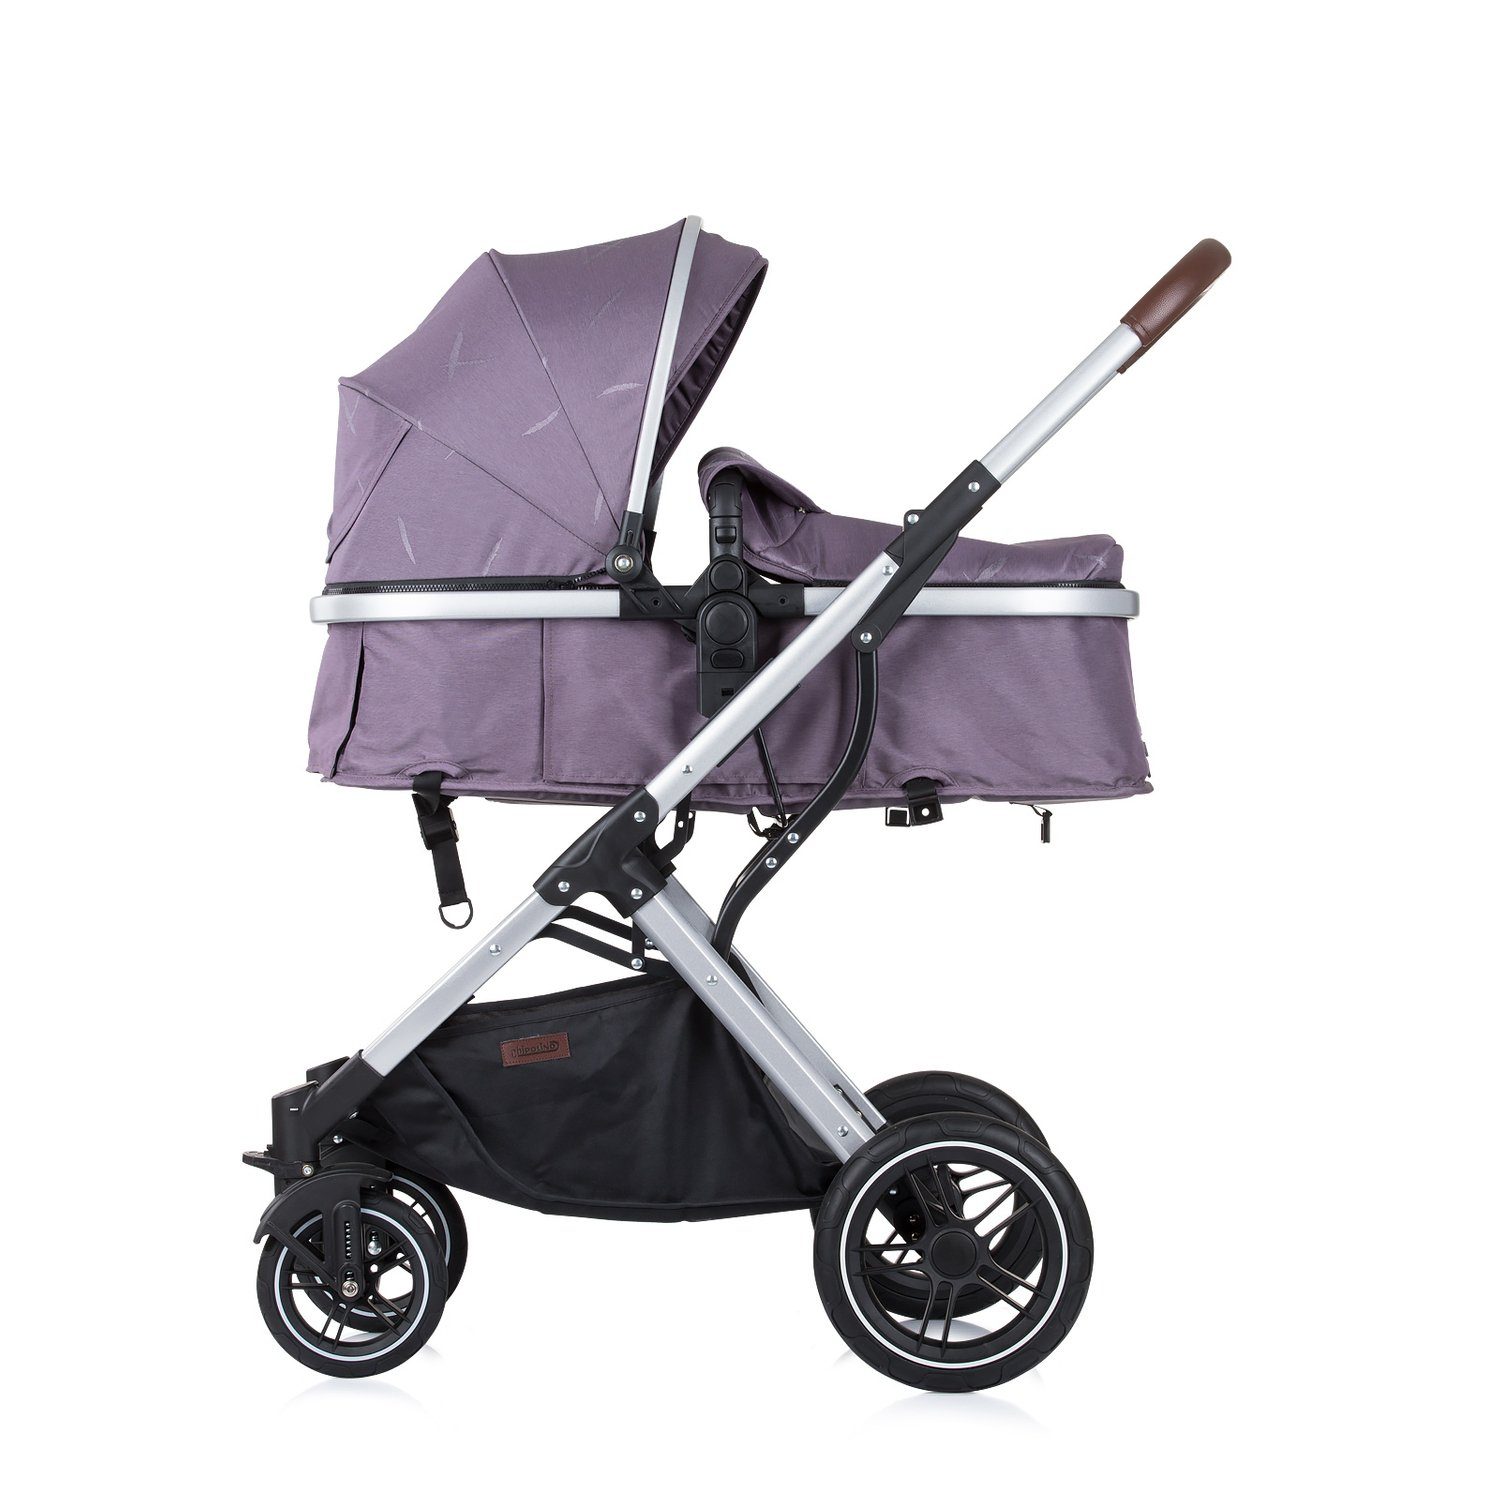 Korb Chipolino 1, 2 Zara Kinderwagen Wickeltasche Schwenkräder Kombi-Kinderwagen lila in Hinterradbremse